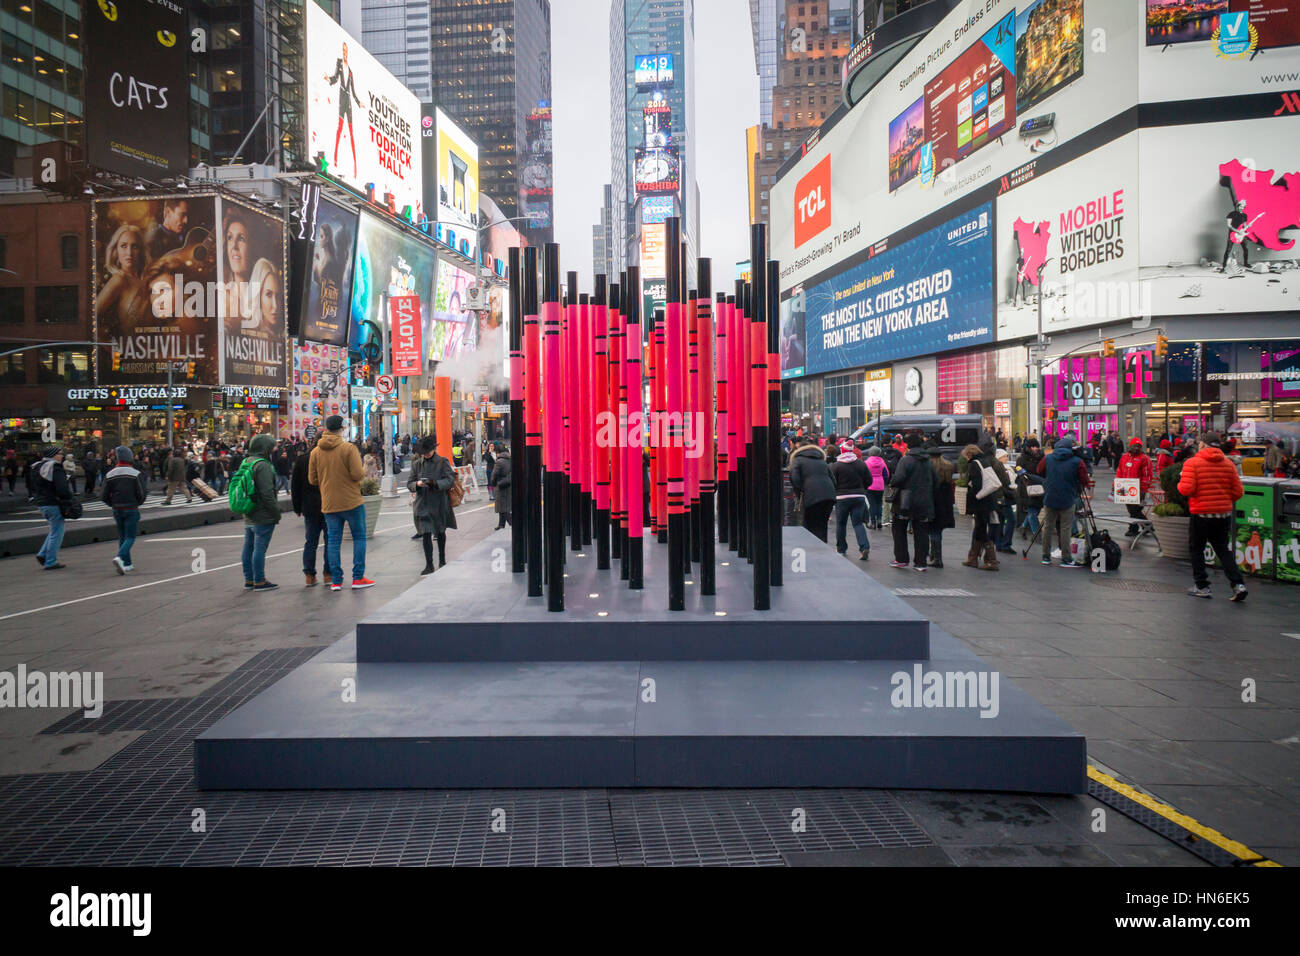 "Siamo stati stranieri una volta troppo', il vincitore del Times Square il cuore di San Valentino design in Times Square a New York Martedì, 7 febbraio 2017. La scultura, progettato dall'Ufficio di ricerca creativa, utilizza i dati pubblici per illustrare i nati all'estero New York residenti con 33 poli inscritto con le origini nazionali degli immigrati. In corrispondenza di un prefissato punto di osservazione il 'Grafici a barre' visualizzare come un cuore. La grafica sarà in vista fino al 5 marzo 2017. (© Richard B. Levine) Foto Stock